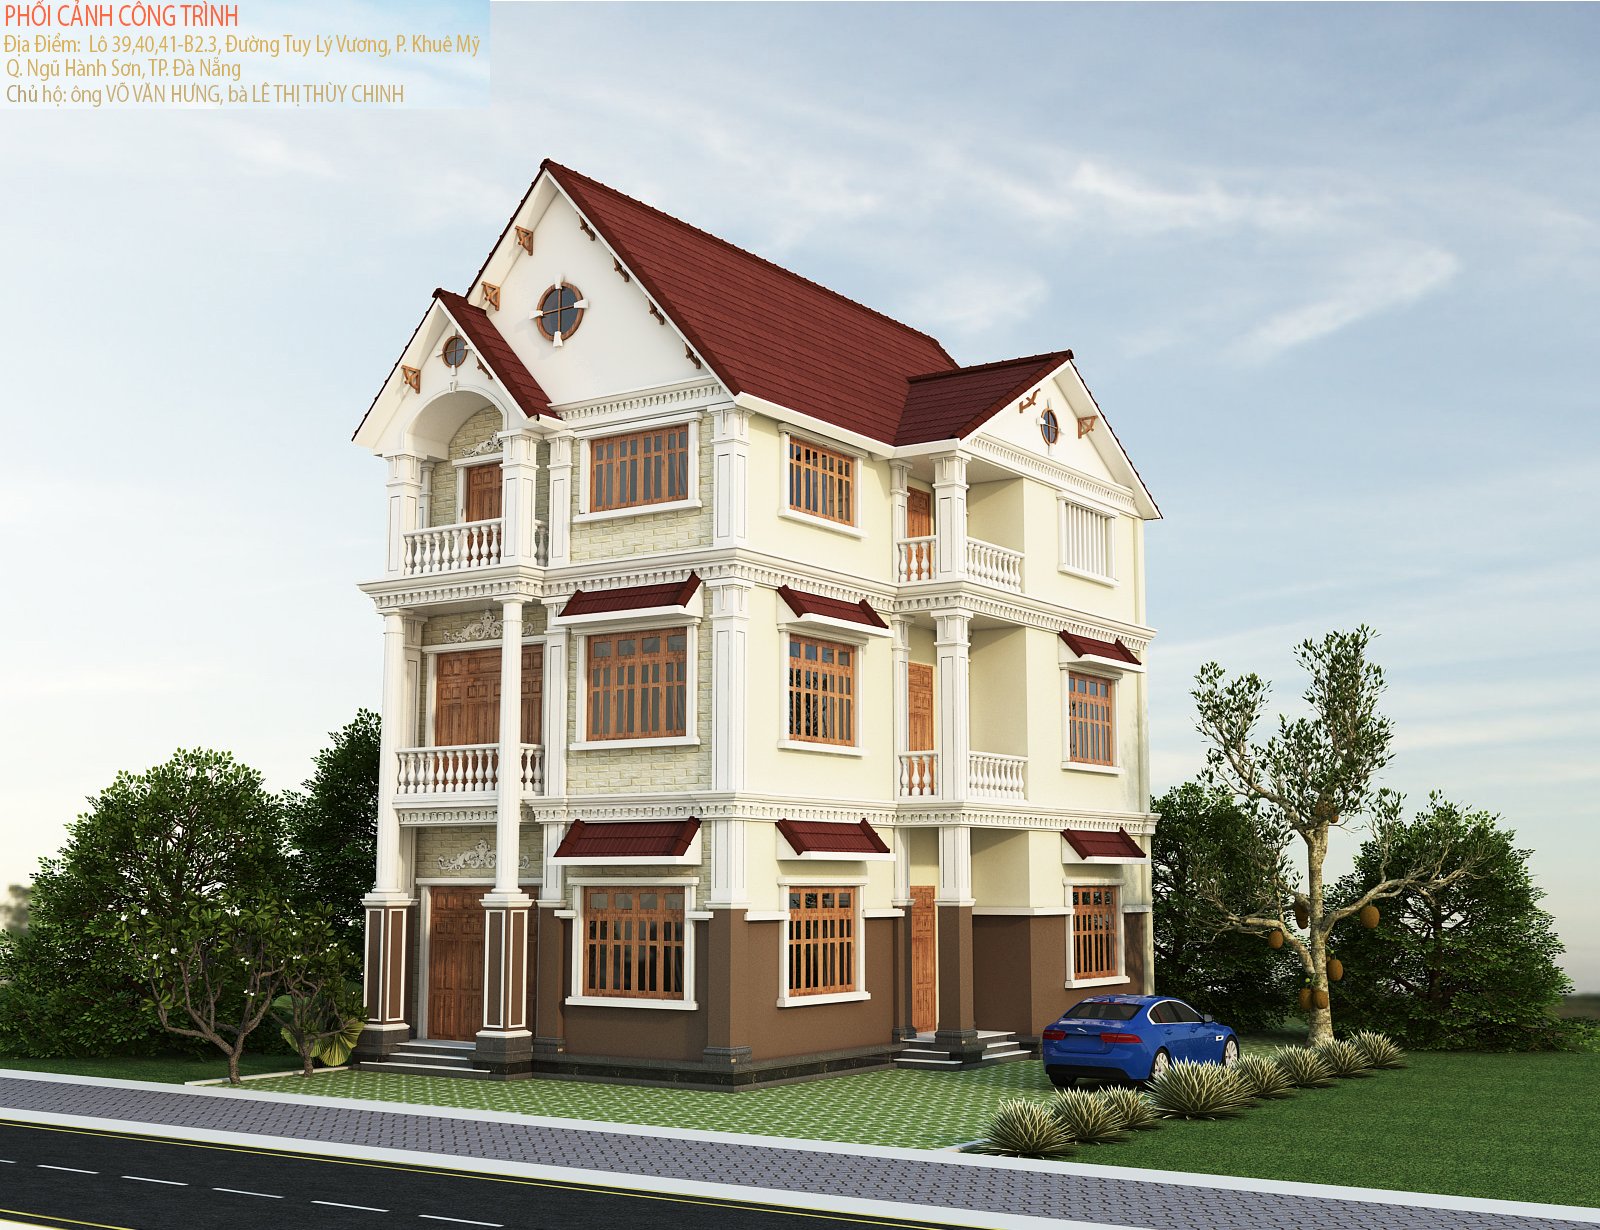 Dự án xây dựng biệt thự villa tại Đà Nẵng Hung's Villa